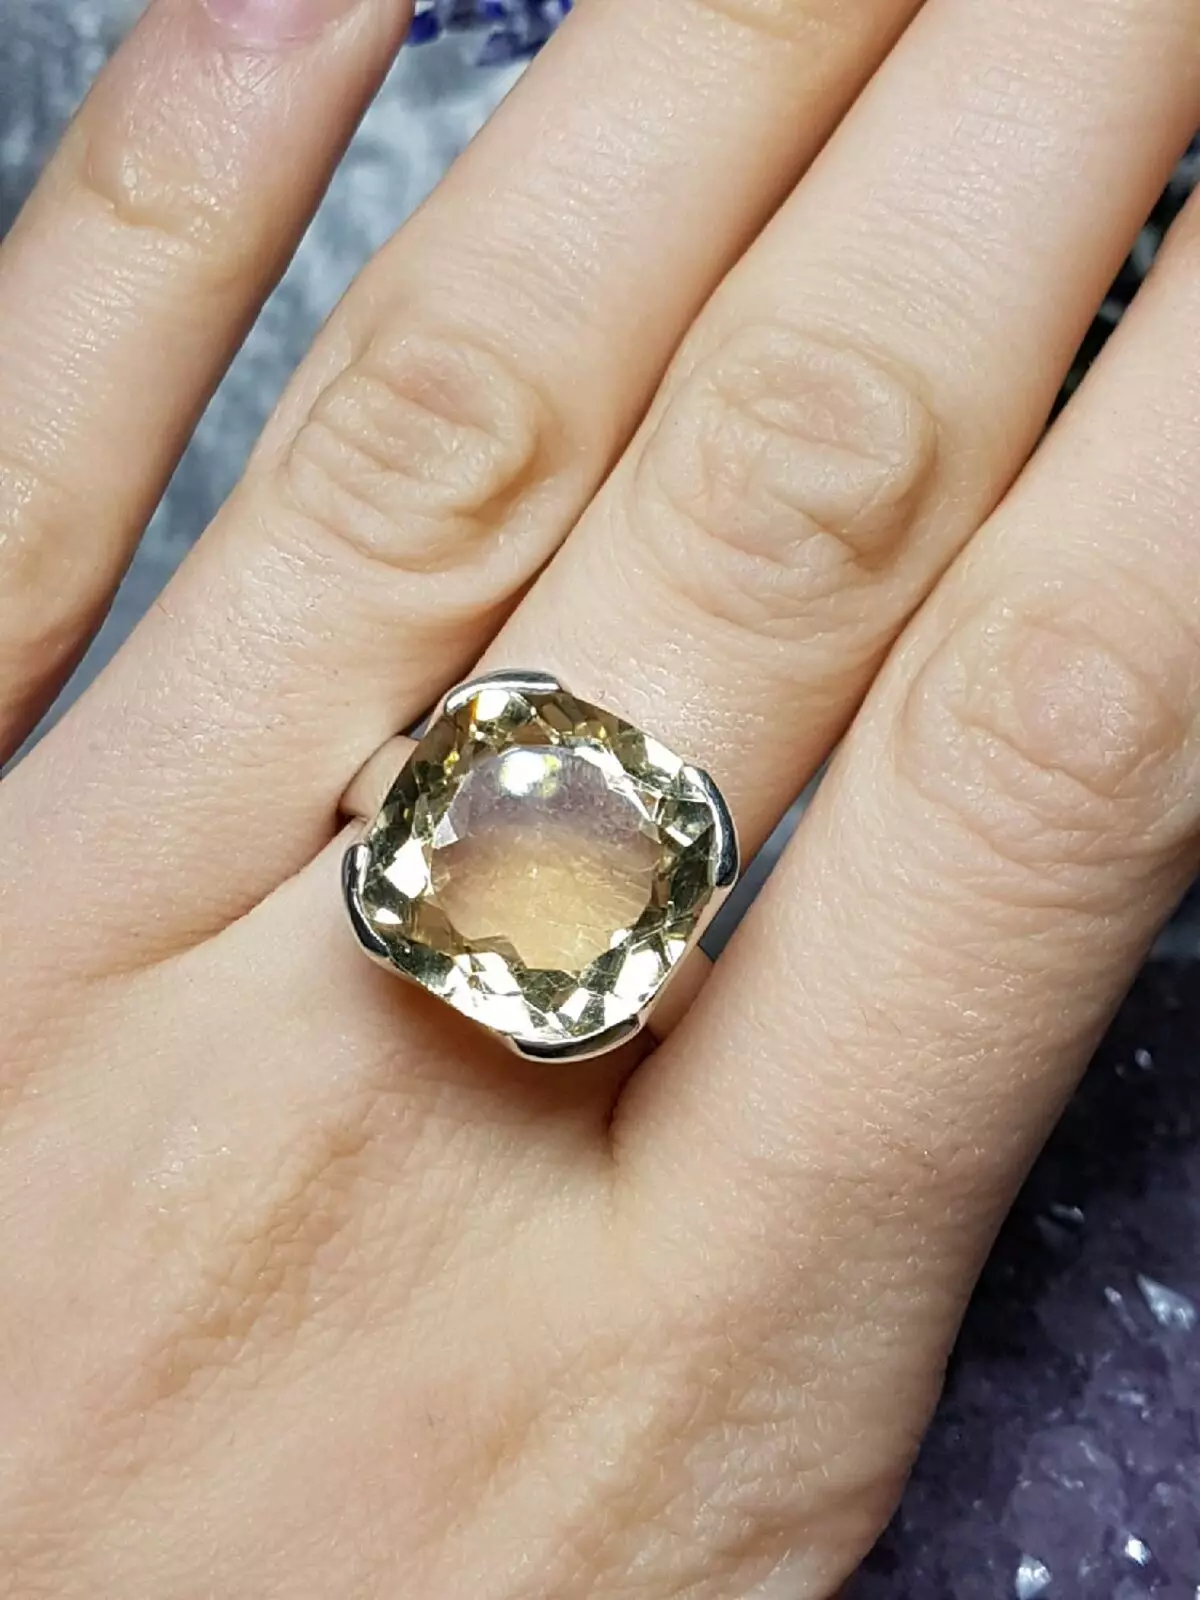 Кольца stone. Кольцо с камнем. Кольцо с крупным круглым камнем. Перстень с крупным камнем. Массивное кольцо с камнем.